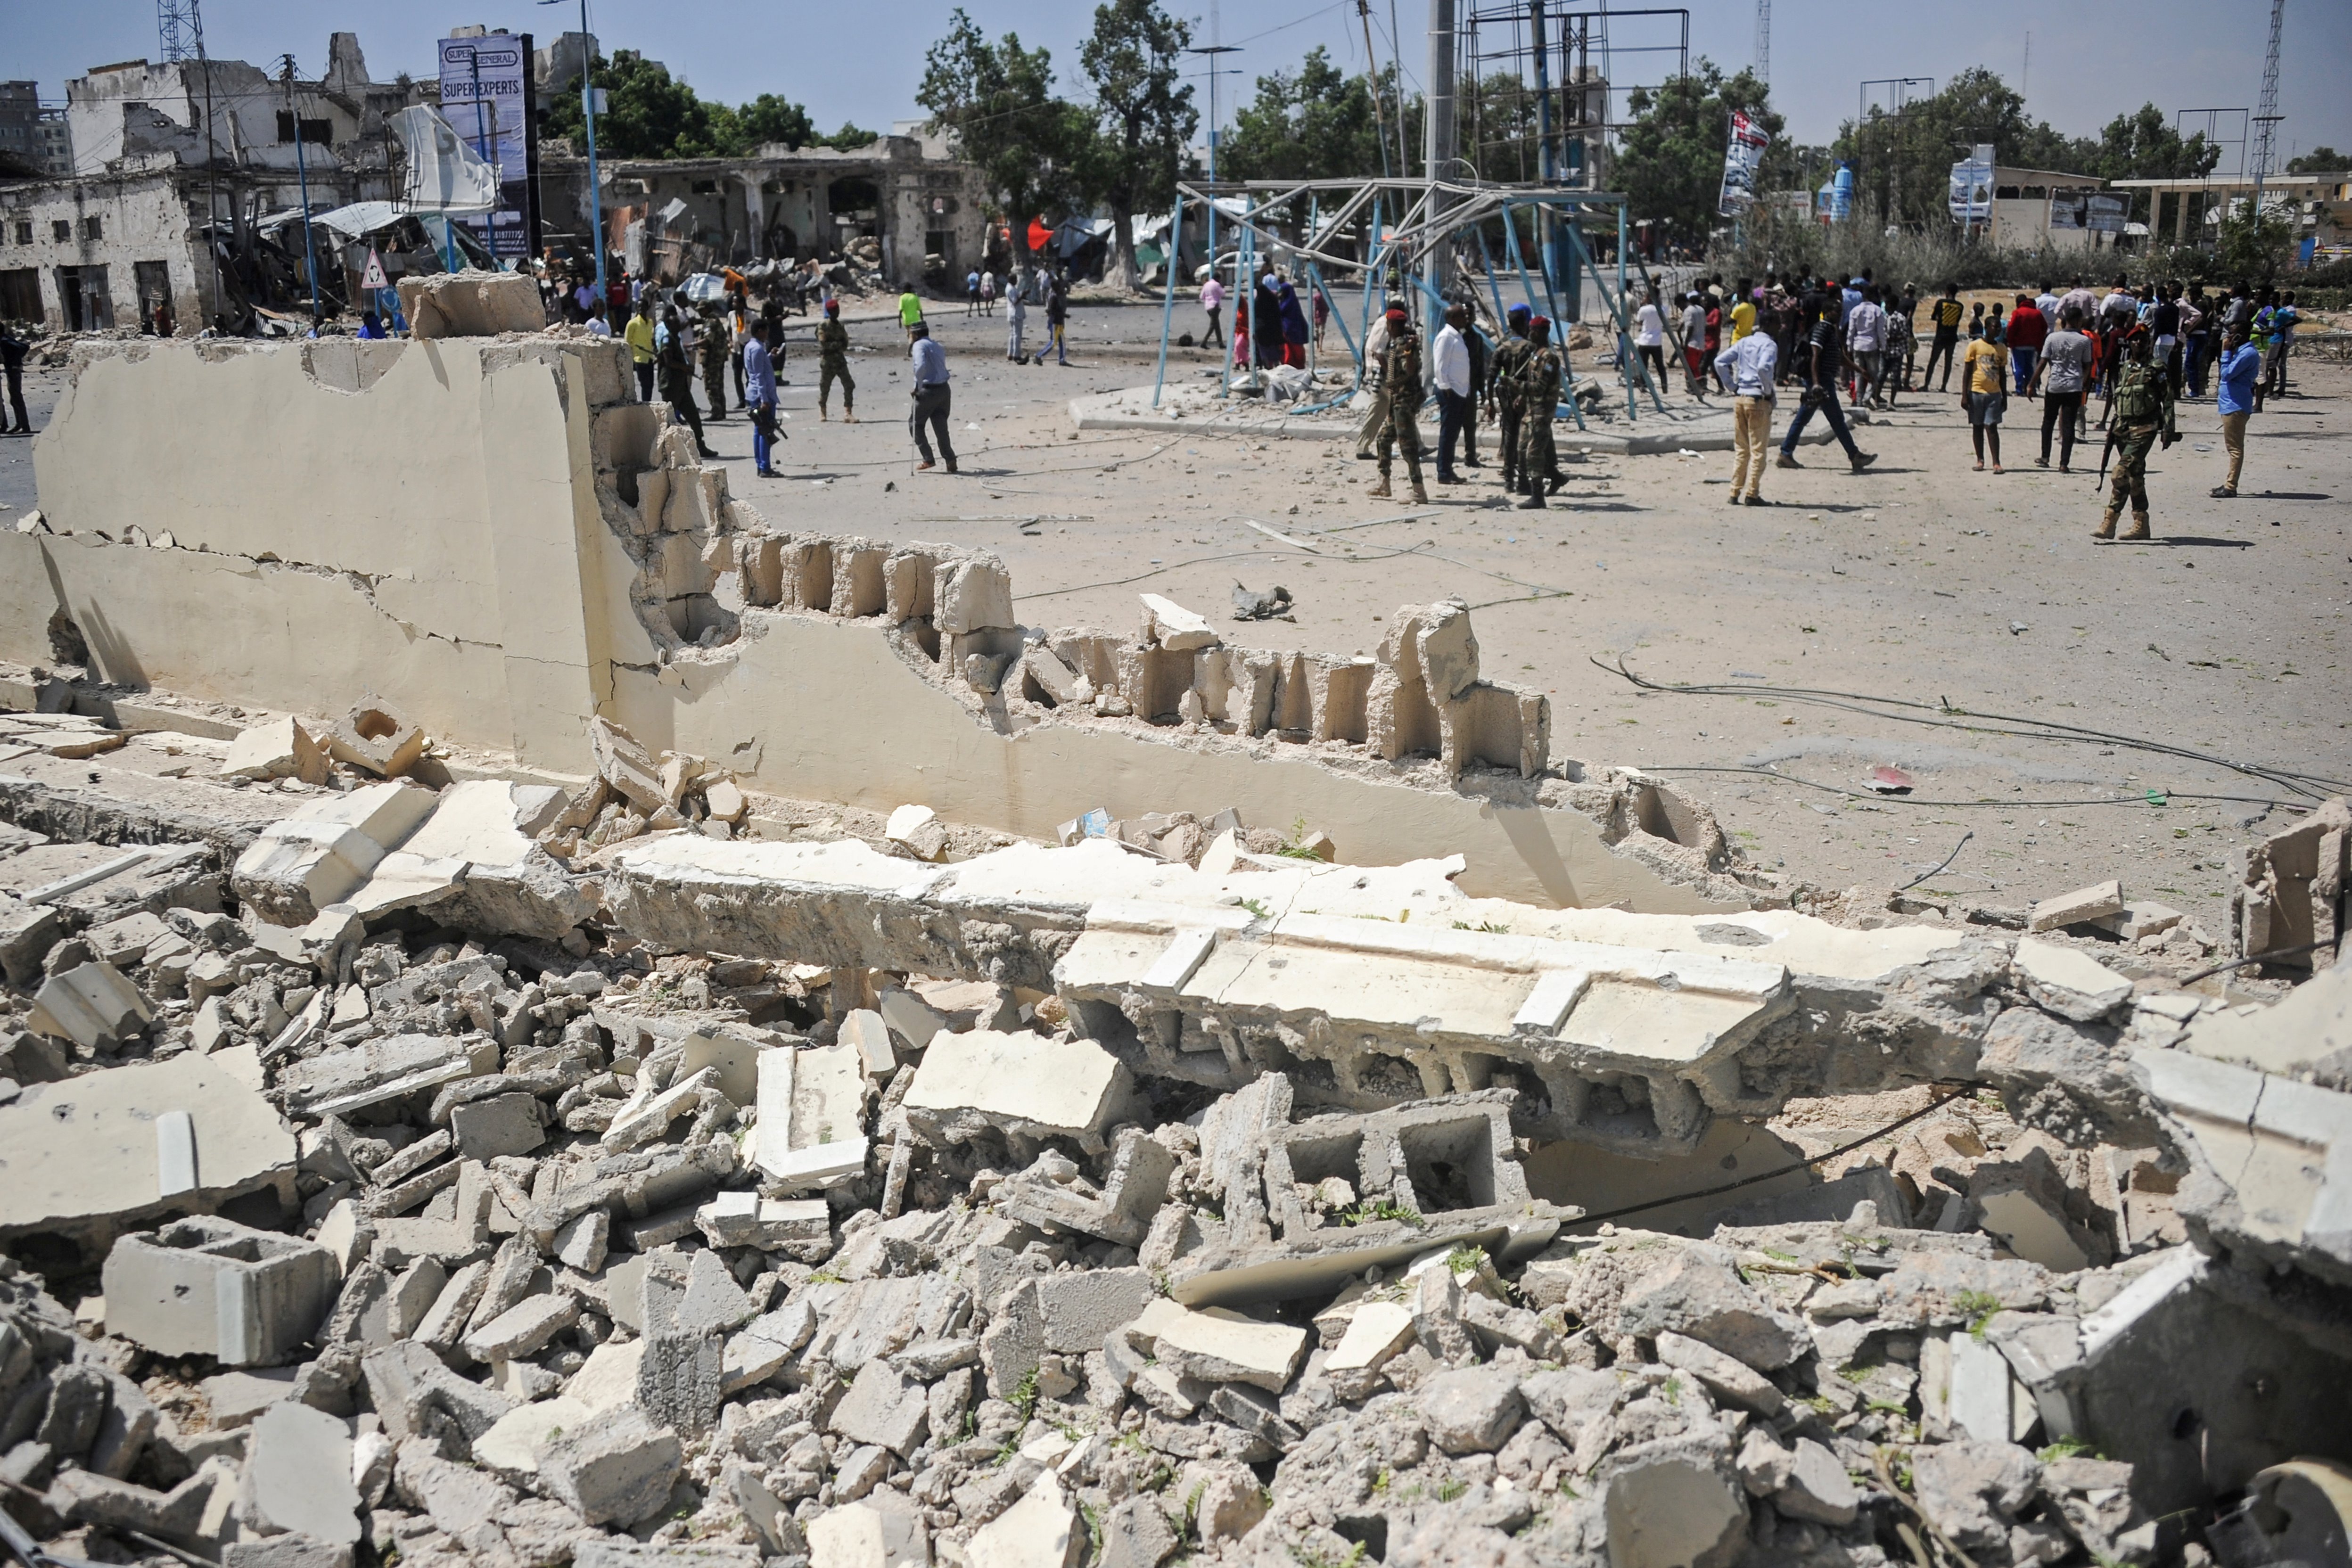 El área atacada se encuentra actualmente bloqueada y rodeada por agentes para prevenir nuevos incidentes (Photo by Mohamed ABDIWAHAB / AFP)